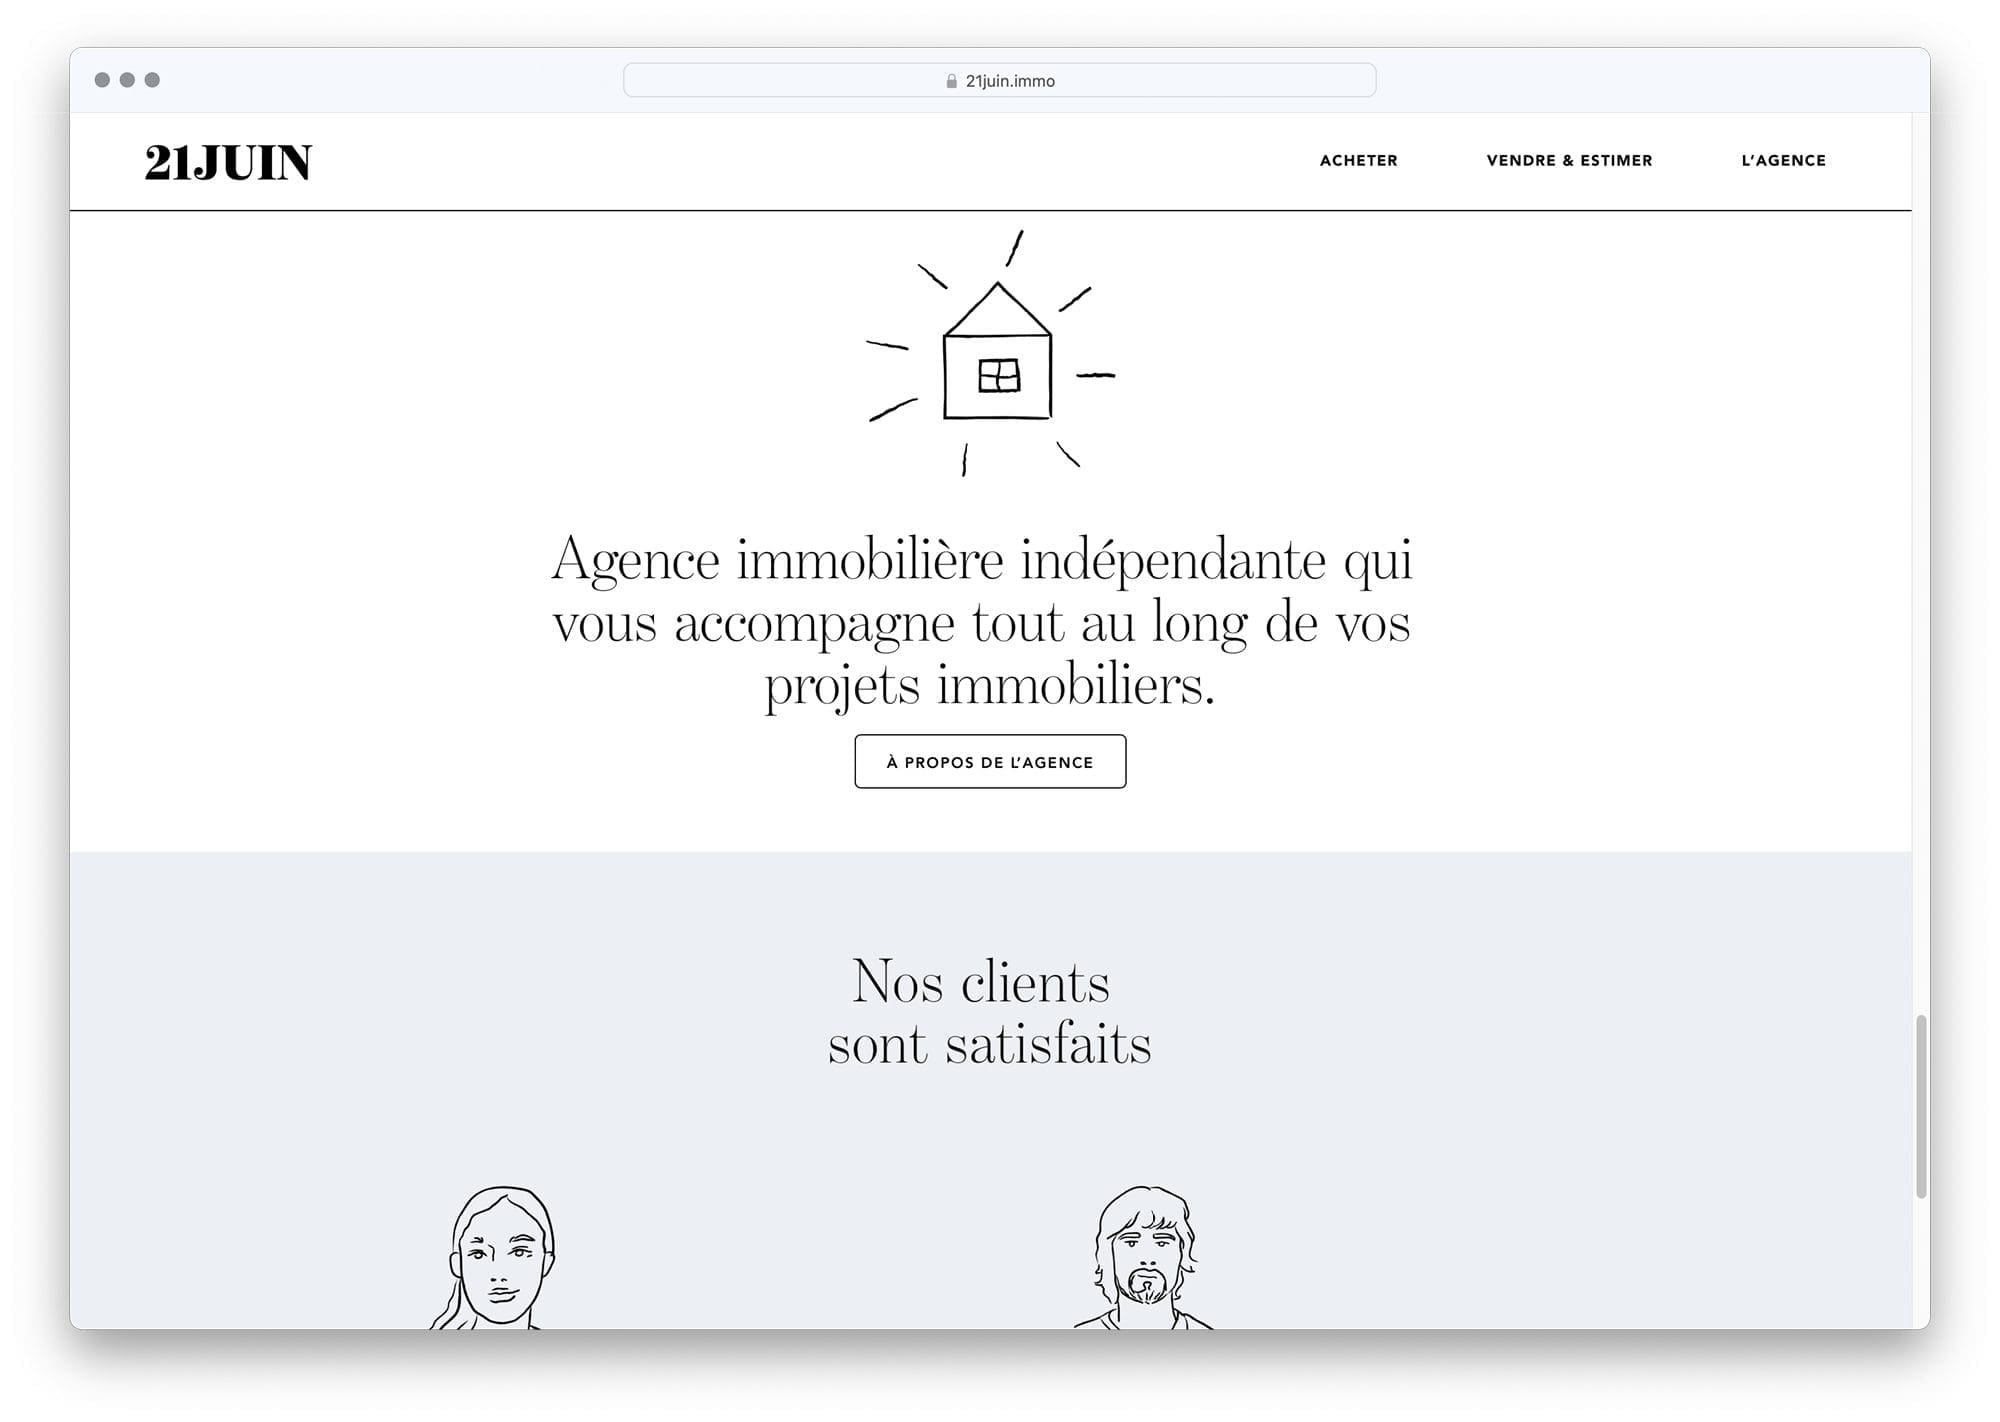 L'agence de design graphique IchetKar décide d'illustrer les pages du site de l'agence immobilière 21 juin à l'aide de dessins-pictogrammes expressif.